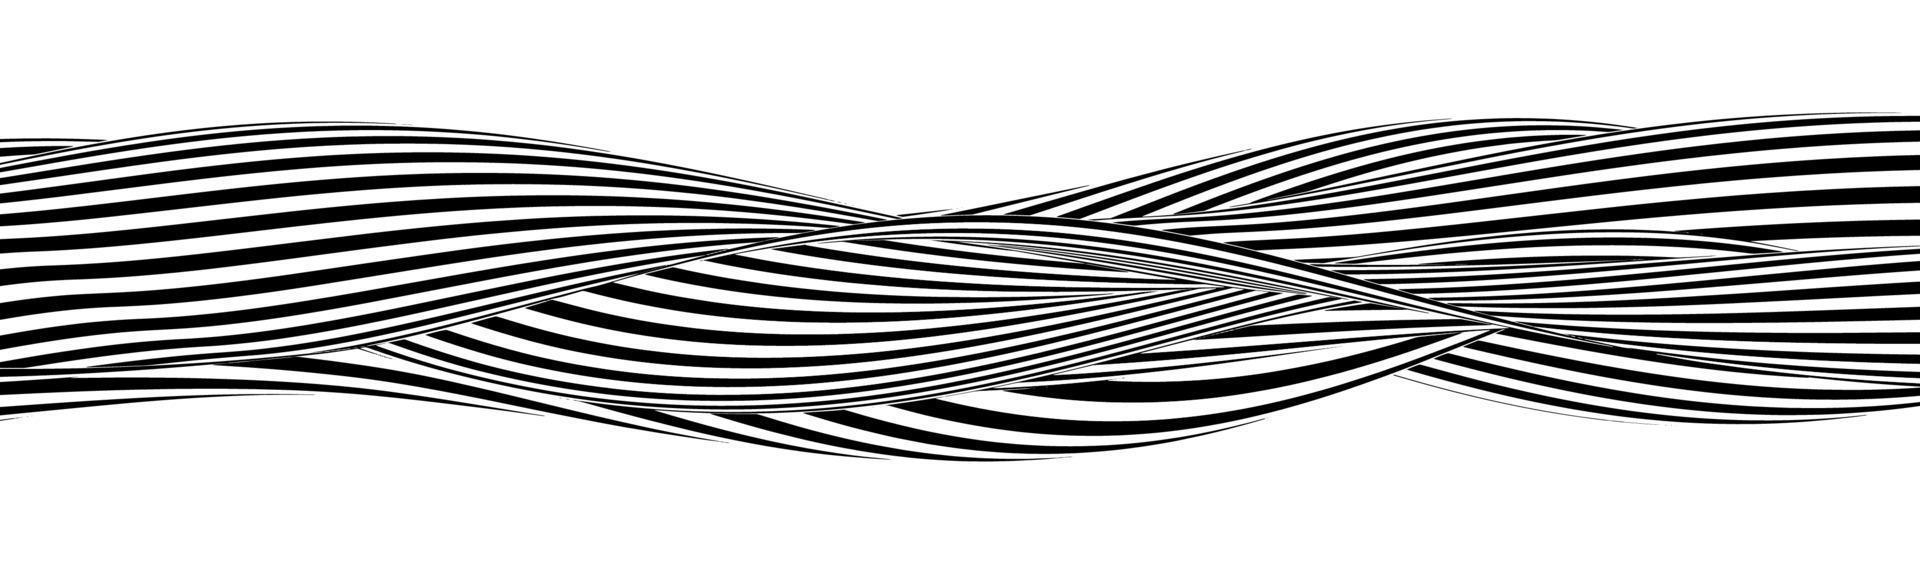 fond de lignes d'illusion d'optique. illusions abstraites en noir et blanc 3d. conception conceptuelle du vecteur d'illusion d'optique. illustration vectorielle eps 10